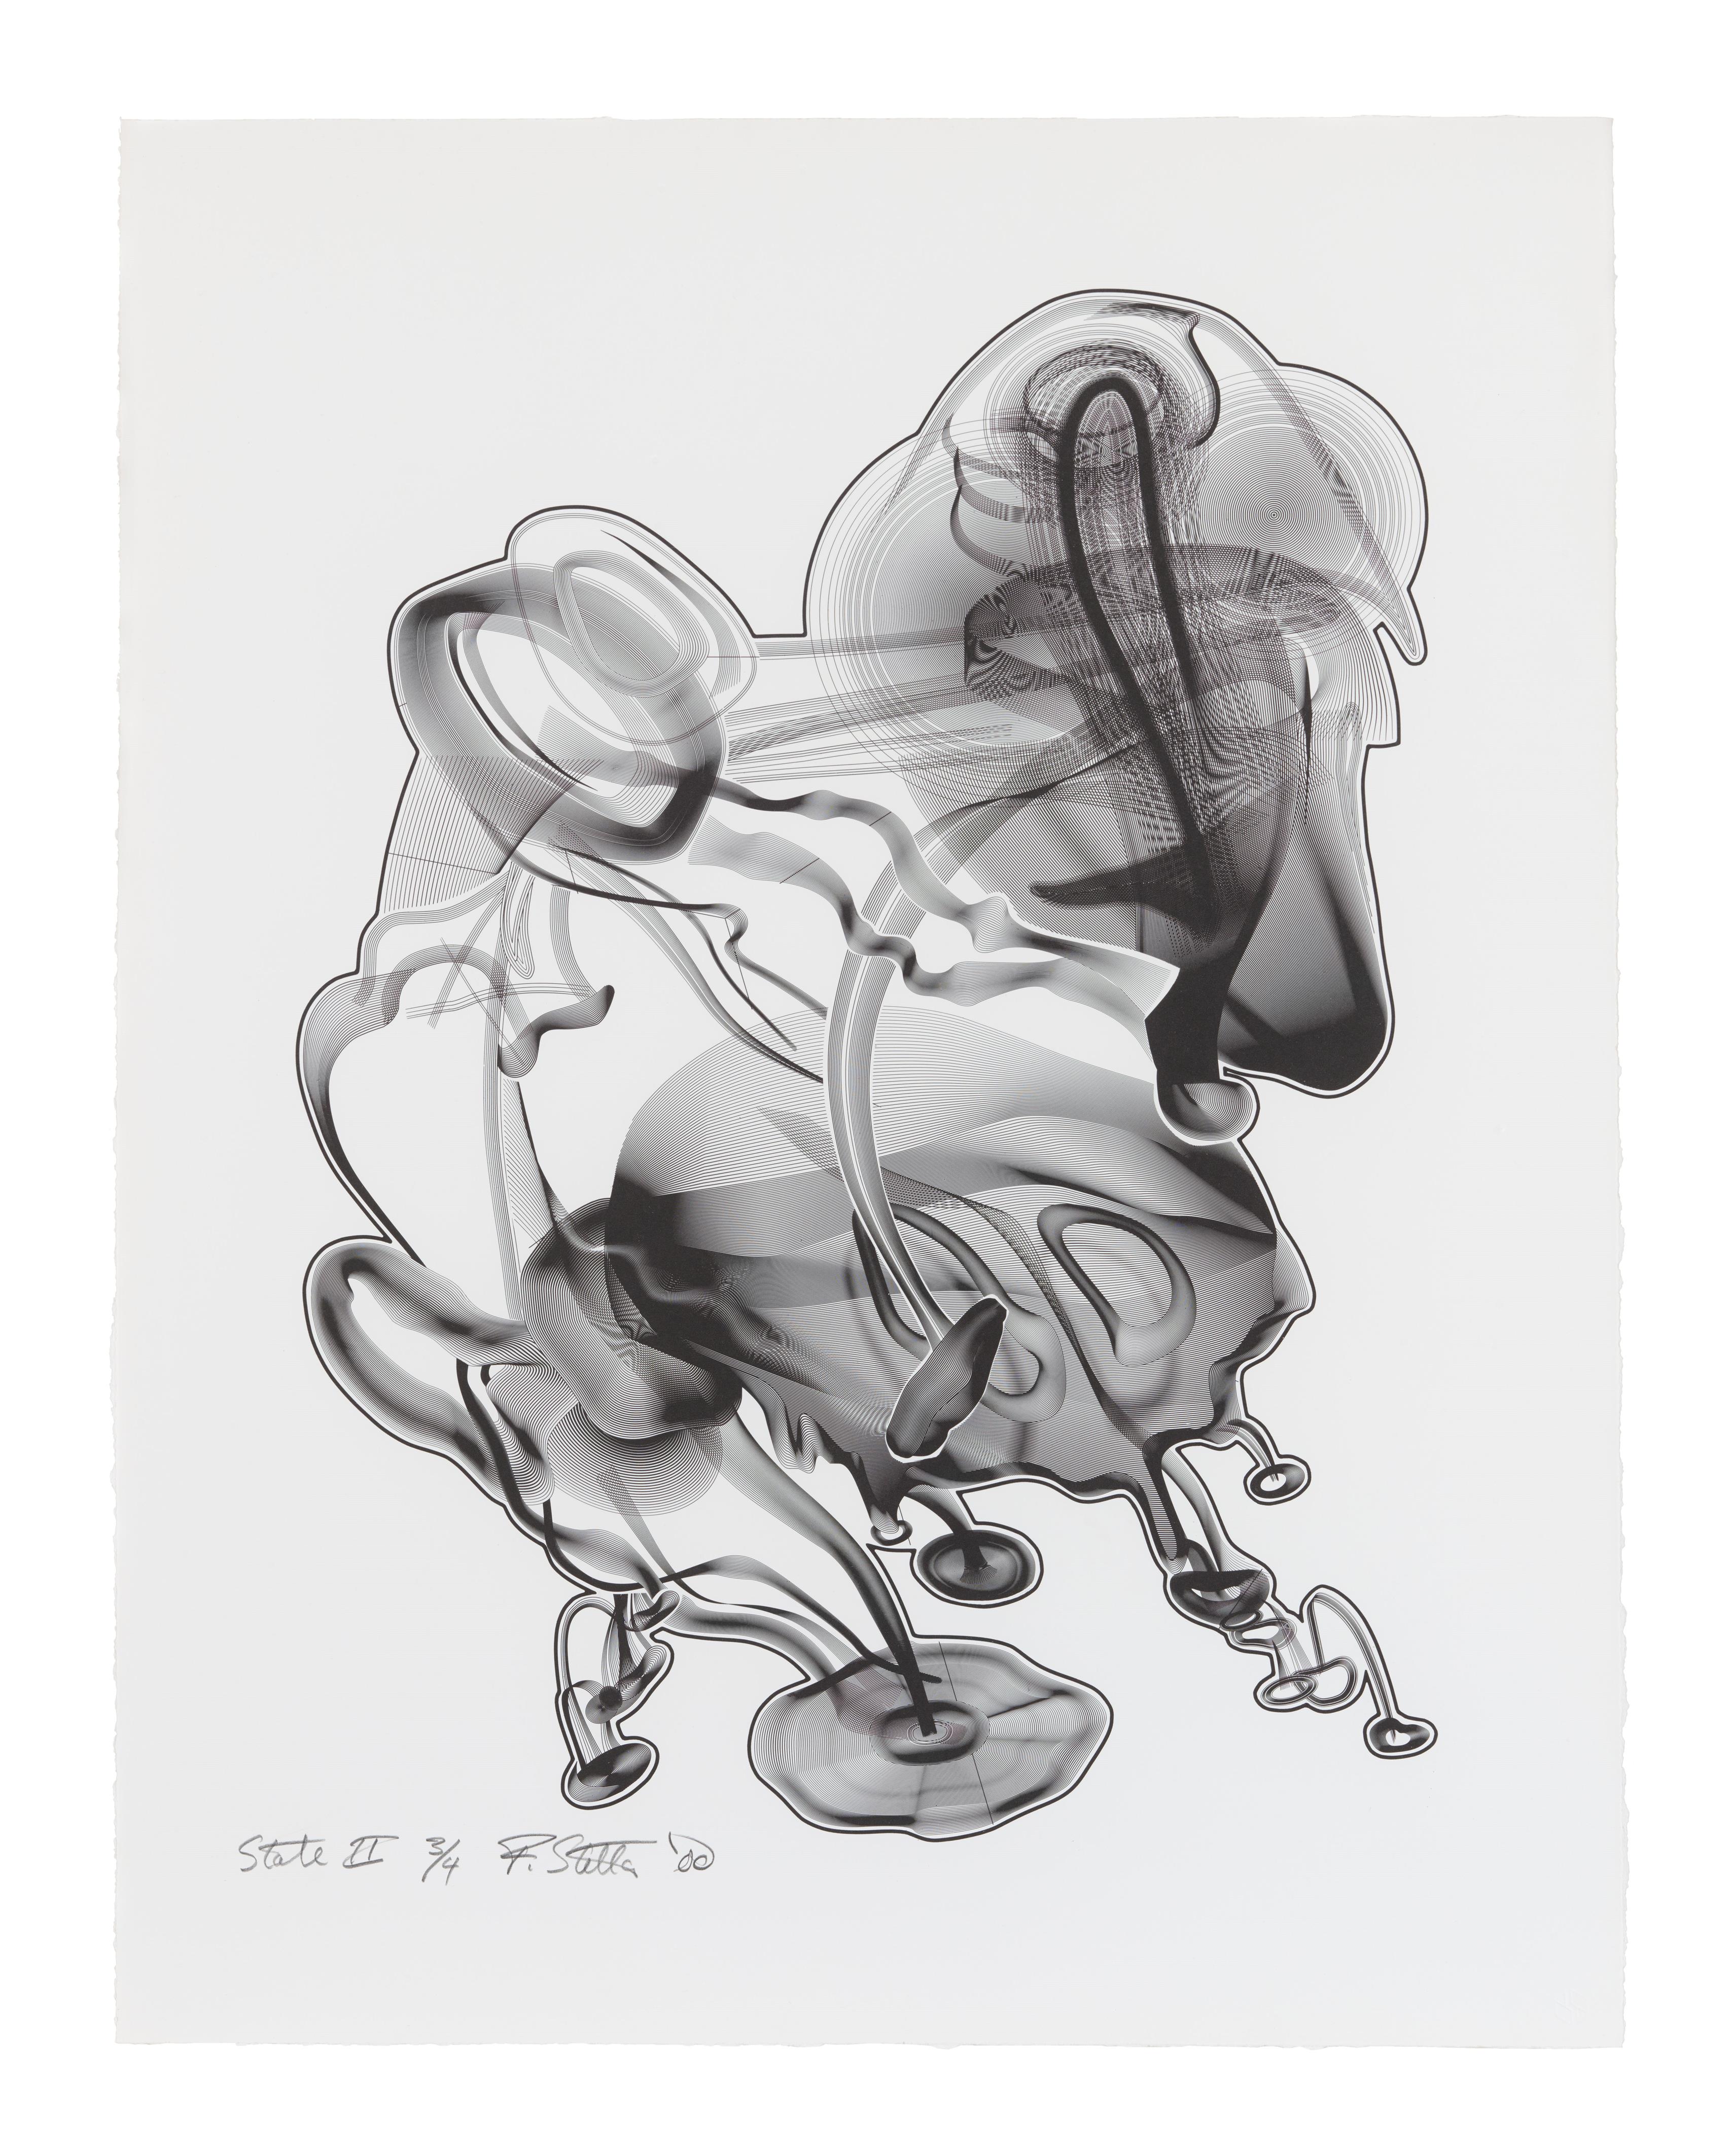 Frank Stella - Schwarze Weisheit # II, State II - image-1